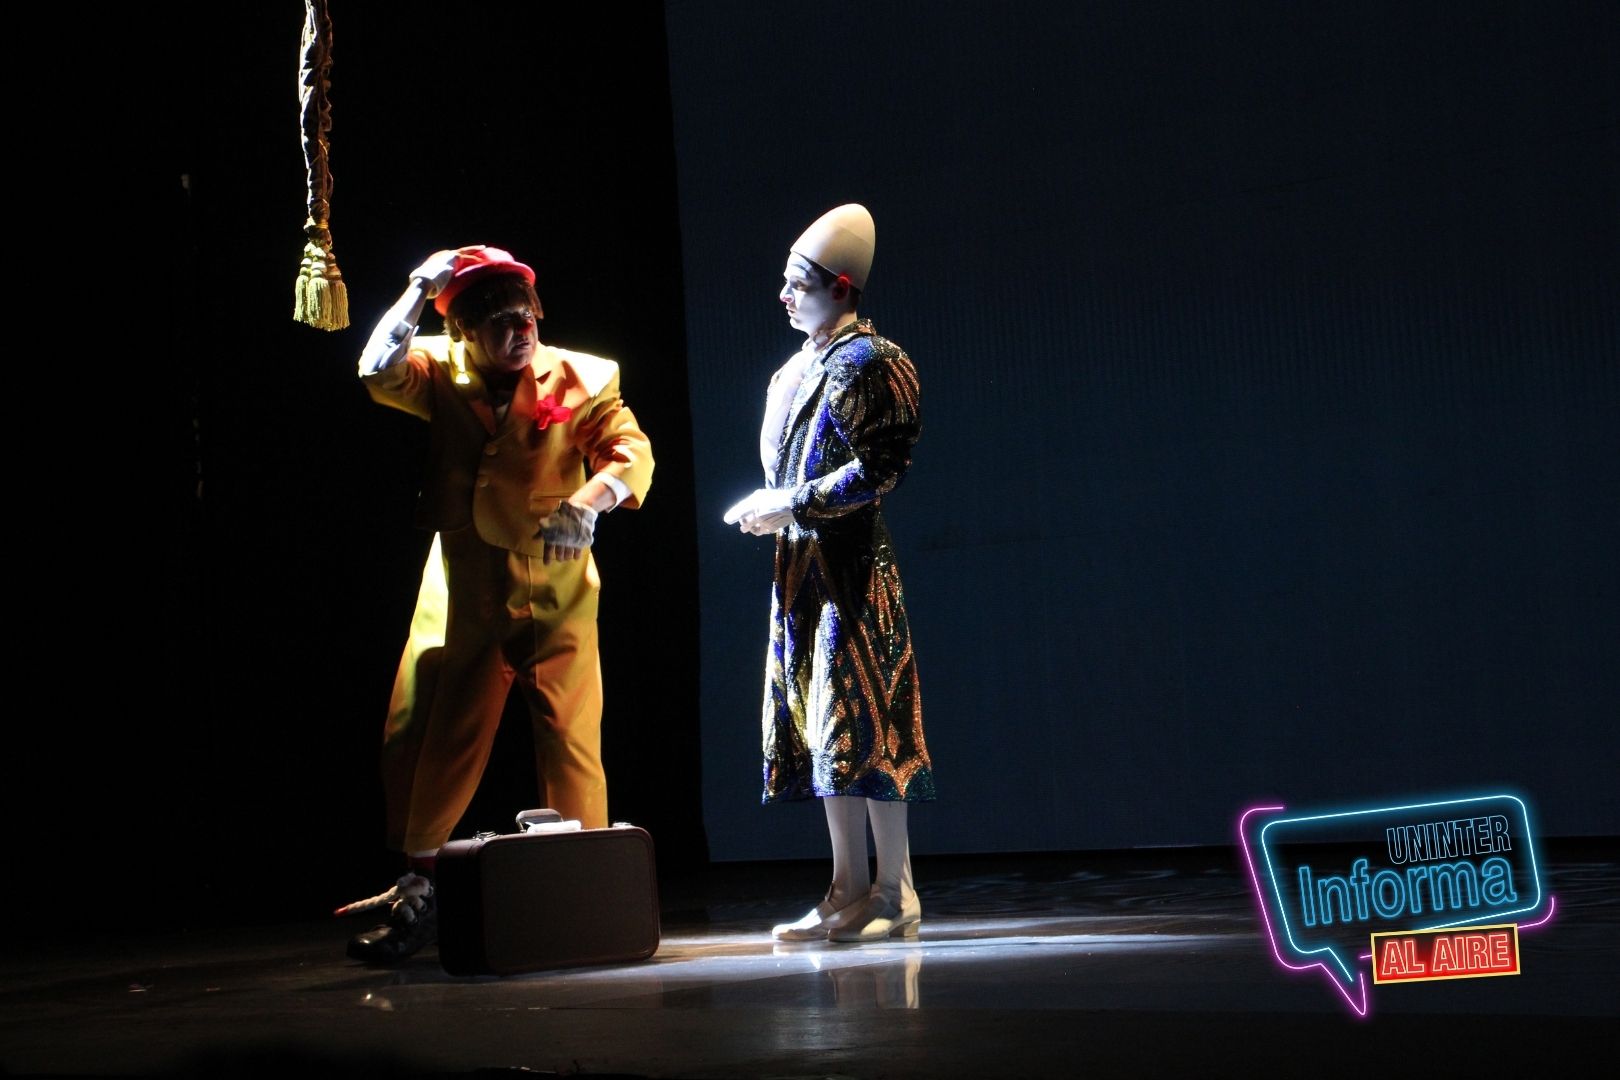  Inician funciones en teatro de "Vie de Cirque Una historia contada en el idioma universal la risa", con un concepto contemporáneo del circo. 